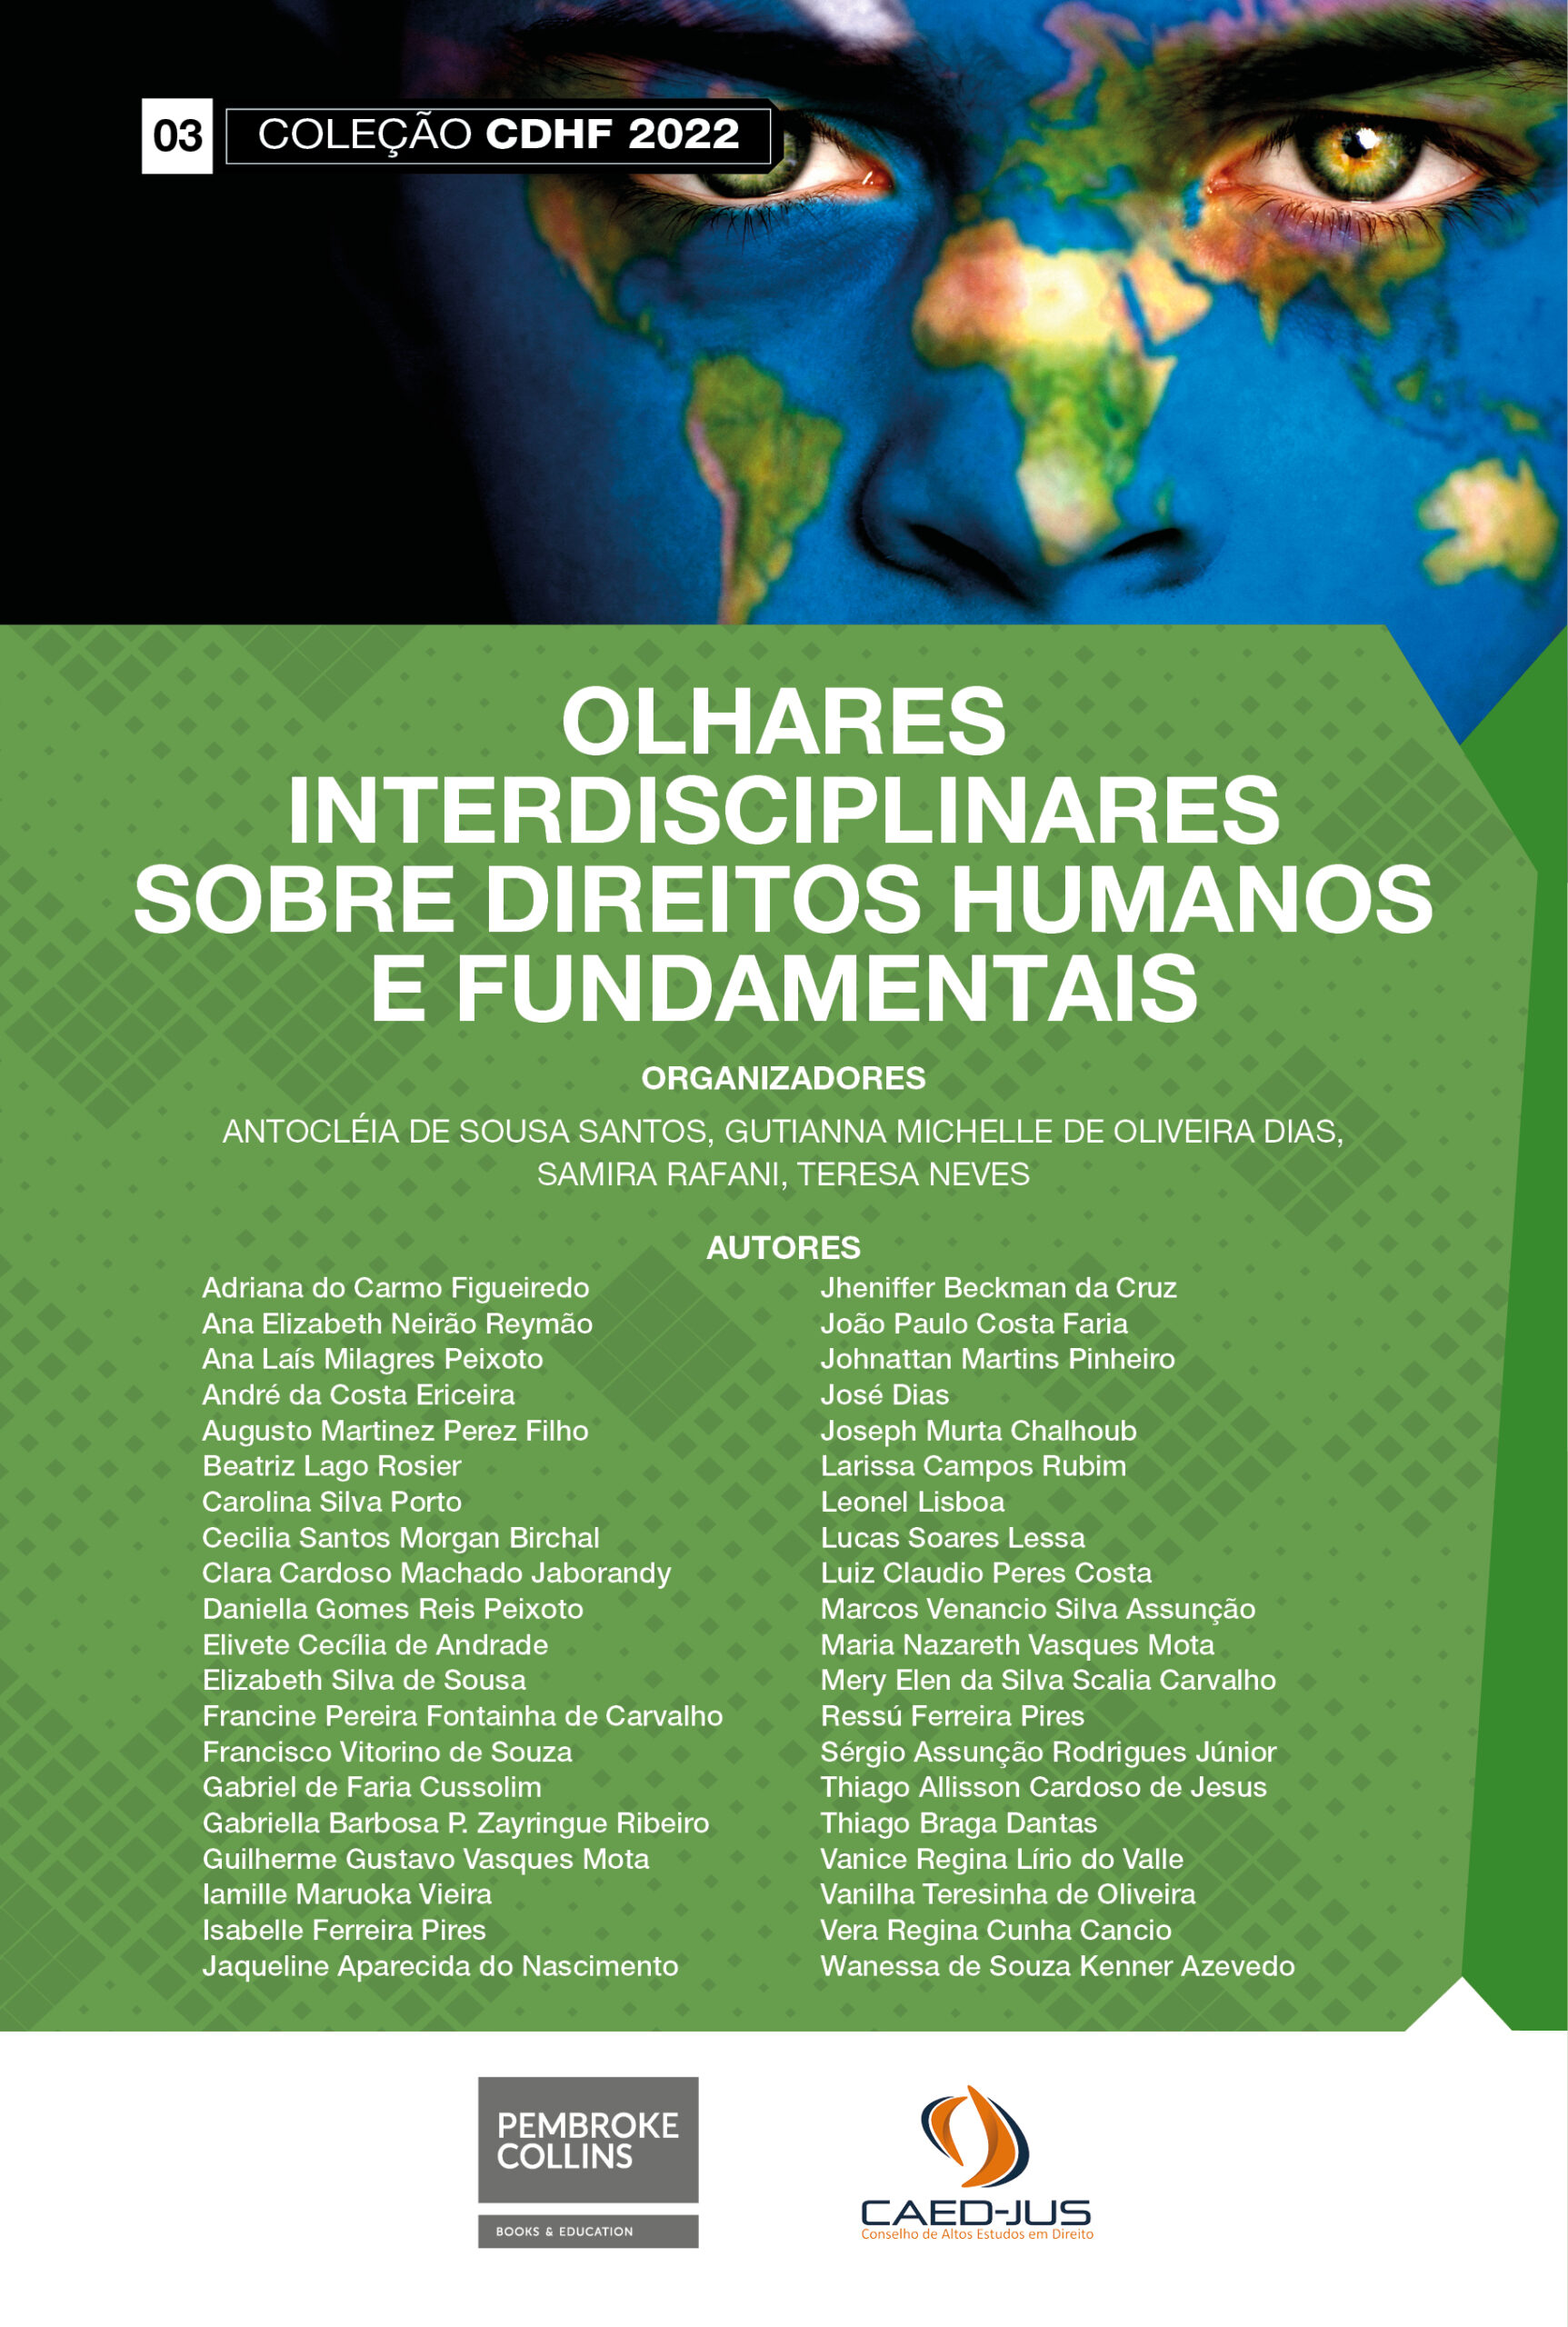 03-CAPA-CDHF2022-OLHARES-INTERDISCIPLINARES-SOBRE-DIREITOS-HUMANOS-E-FUNDAMENTAIS